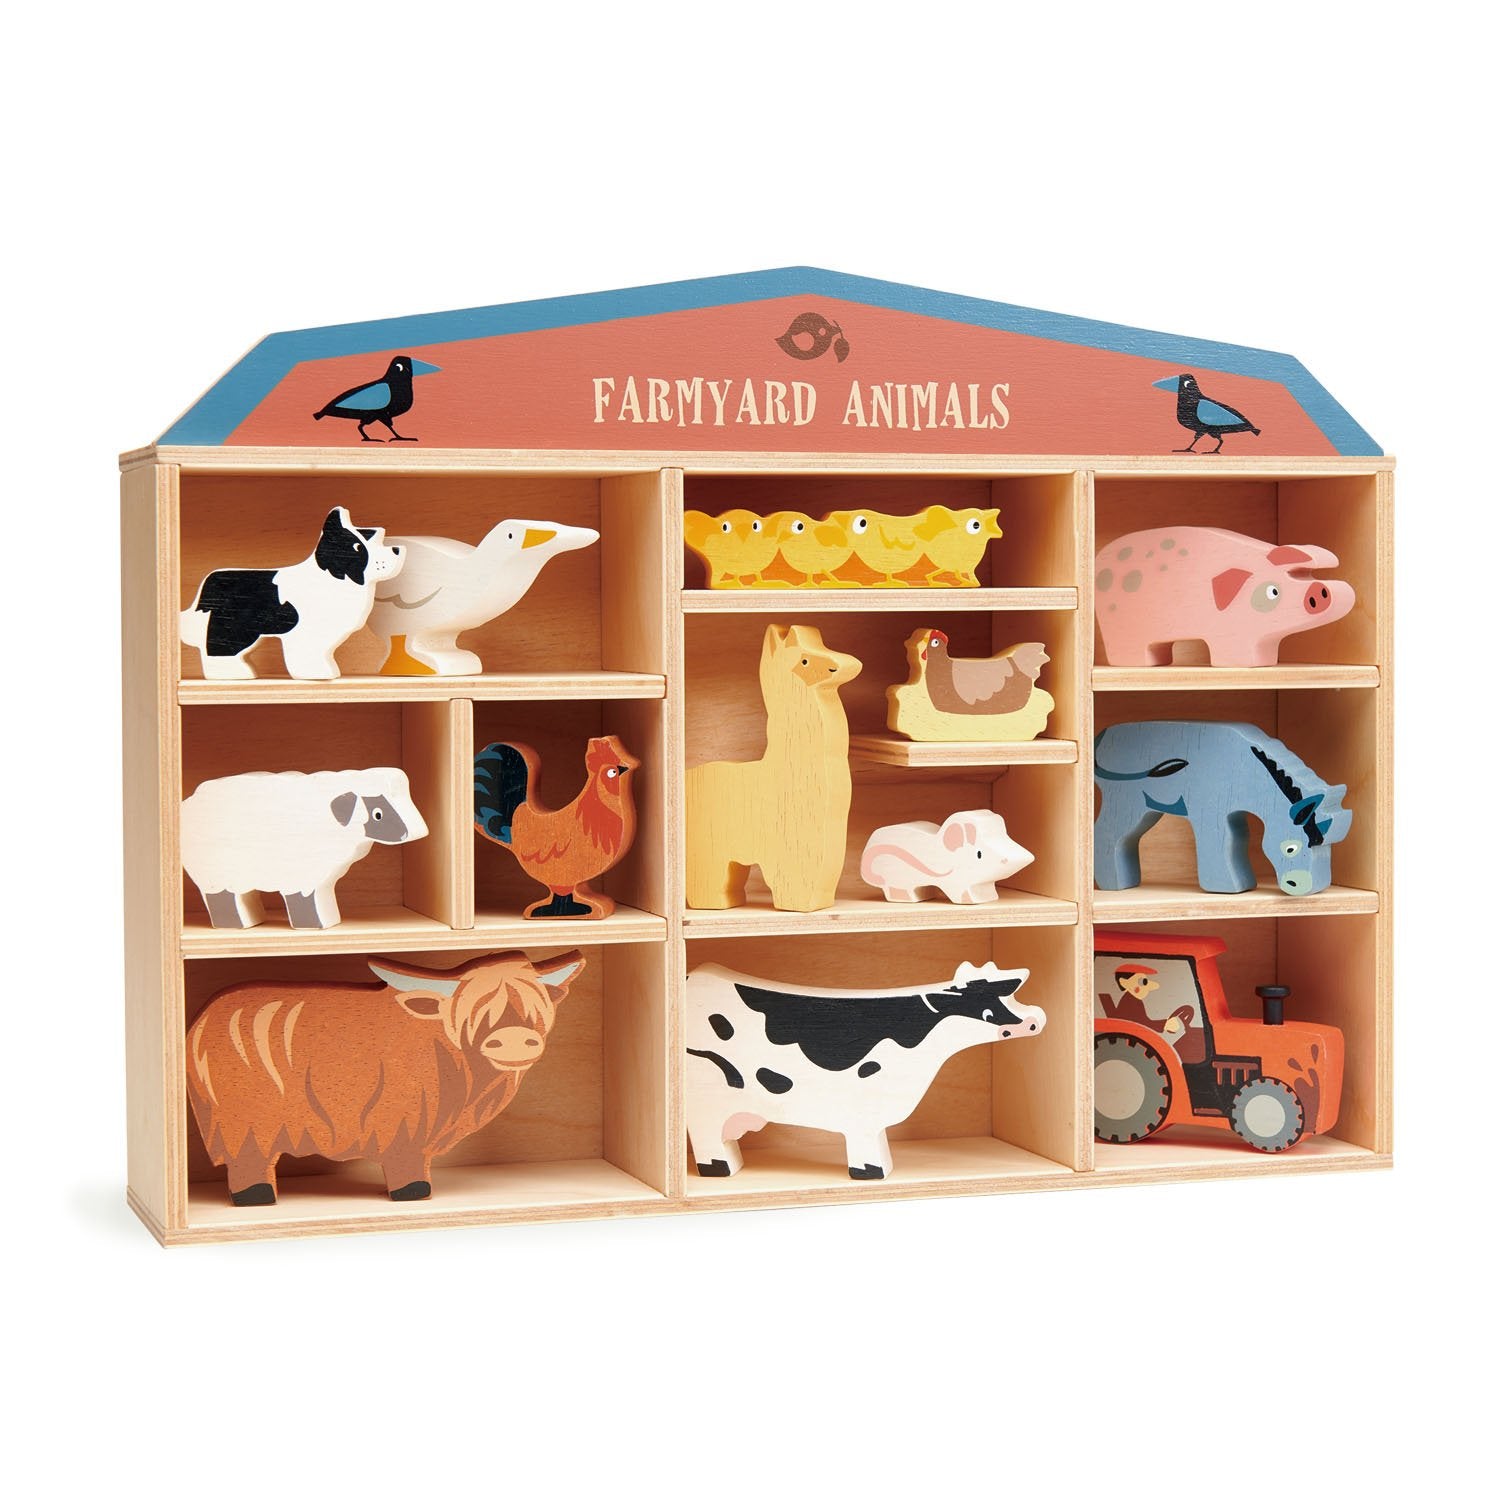 Wooden Farmyard Animals & Shelf